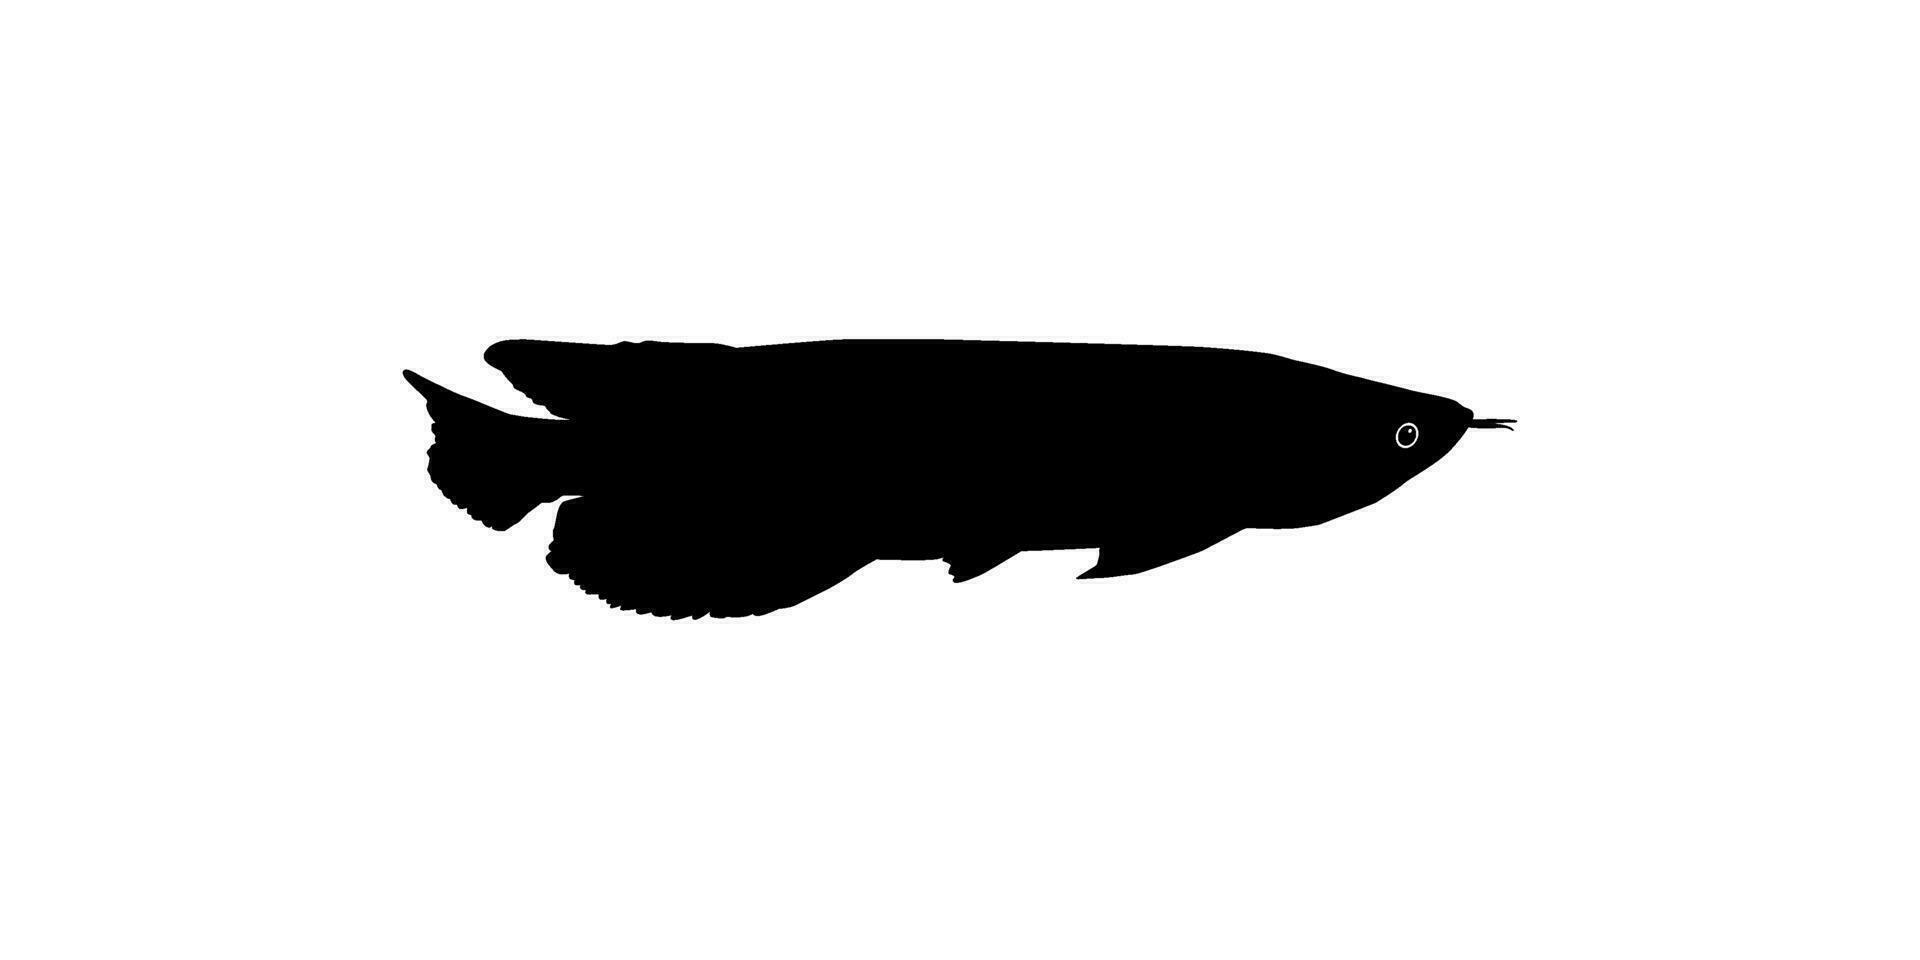 silhouet van de arowana of arwana ook bekend net zo draak vis, voor kunst illustratie, logo type, pictogram, website of grafisch ontwerp element. vector illustratie